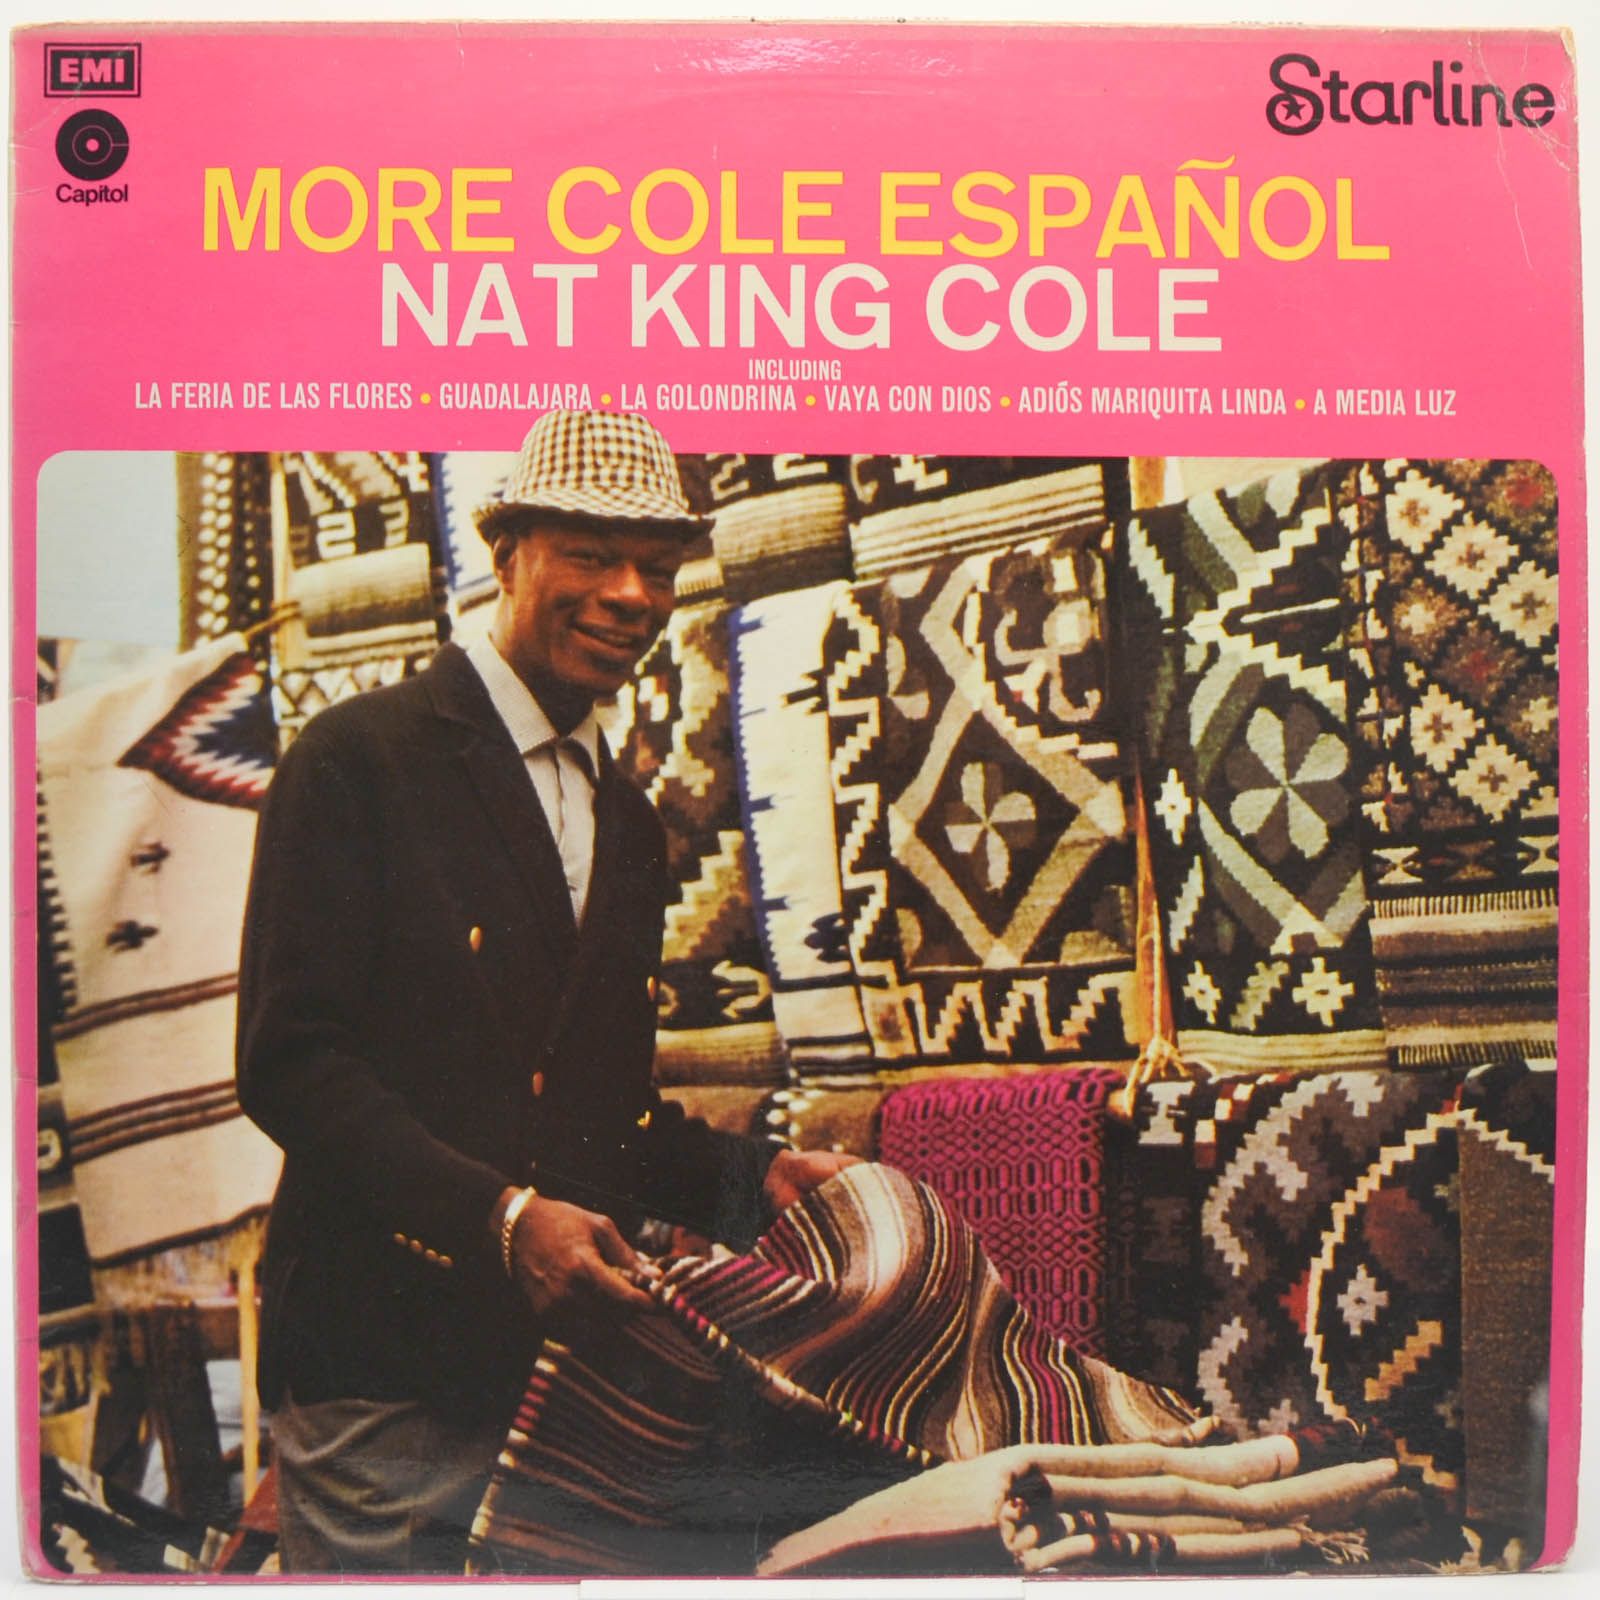 Nat King Cole — More Cole Español (UK), 1974